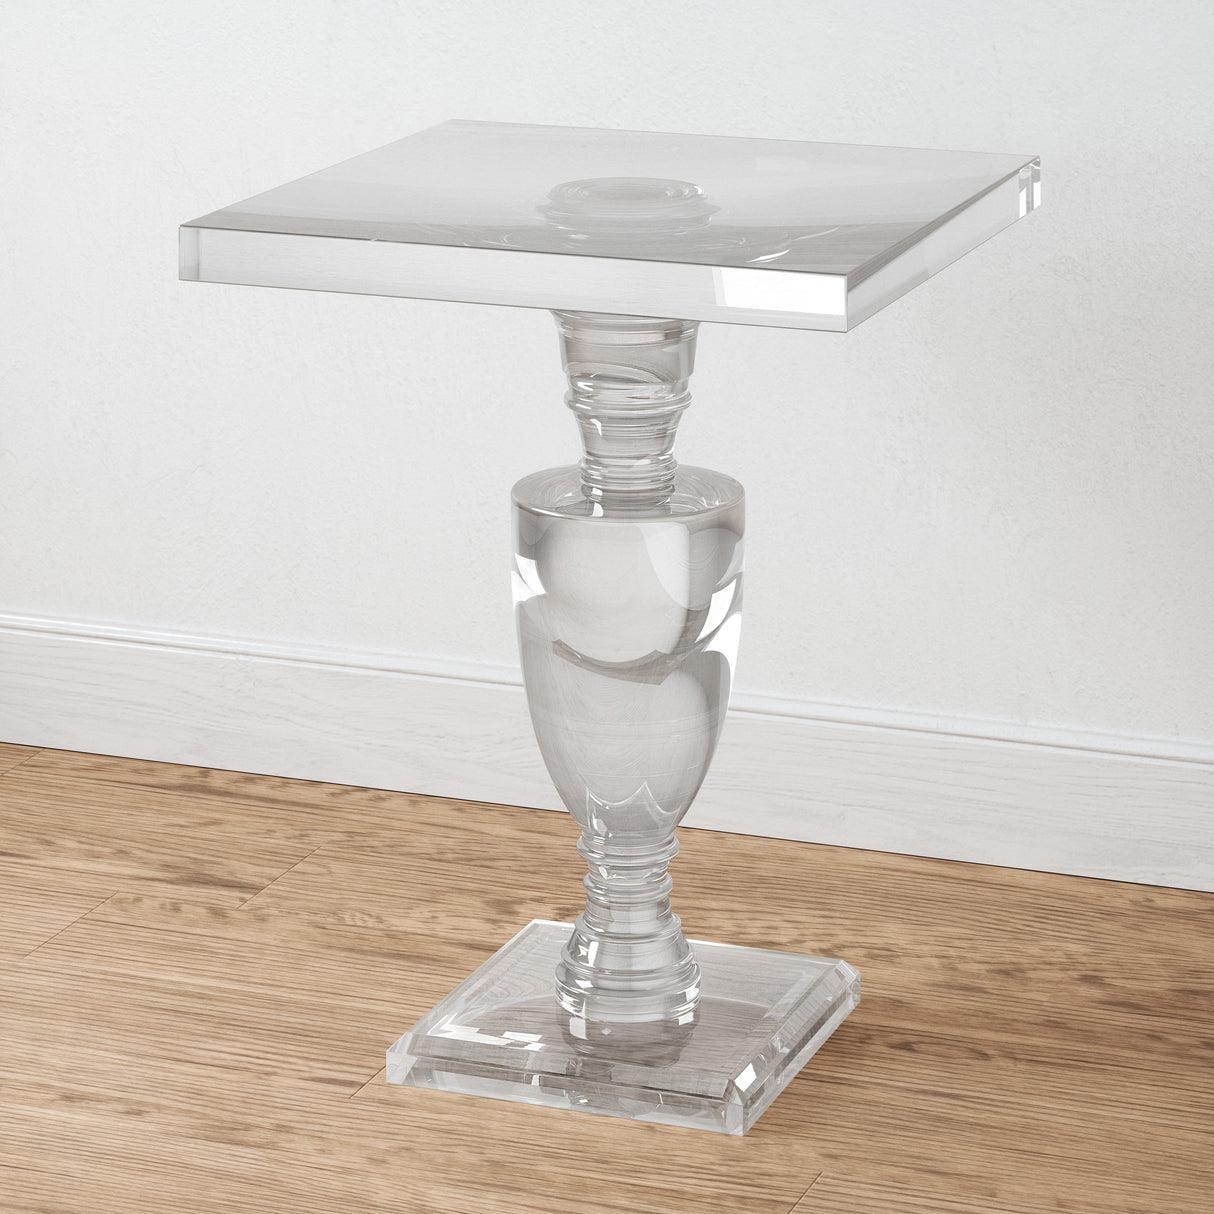 Elk H0015-9102 Jacobs Accent Table - Pedestal